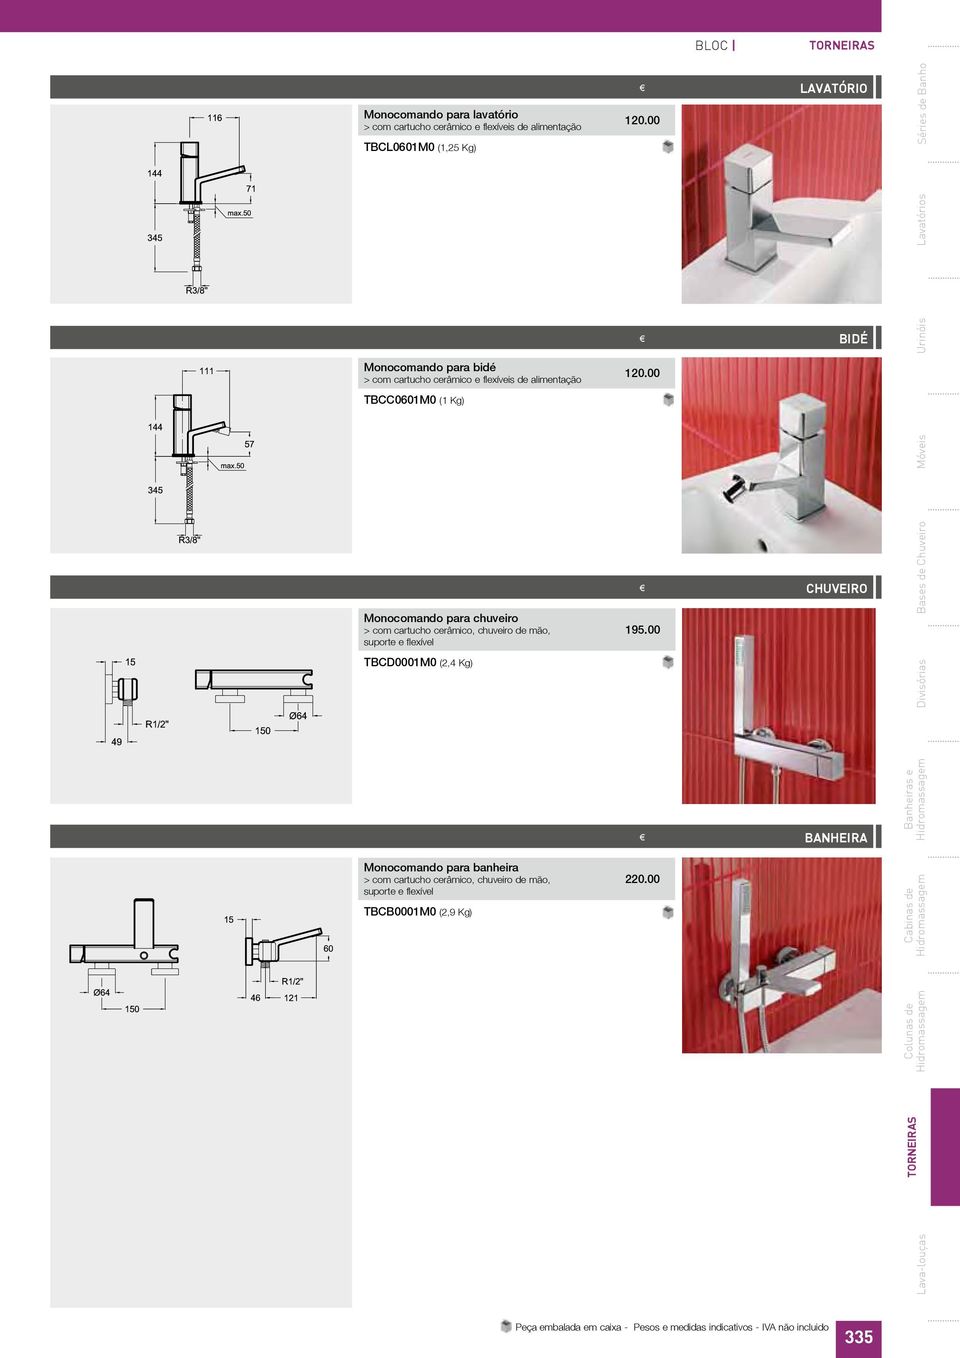 suporte e flexível TBCD0001M0 (2,4 Kg) Monocomando para banheira > com cartucho cerâmico, chuveiro de mão, suporte e flexível TBCB0001M0